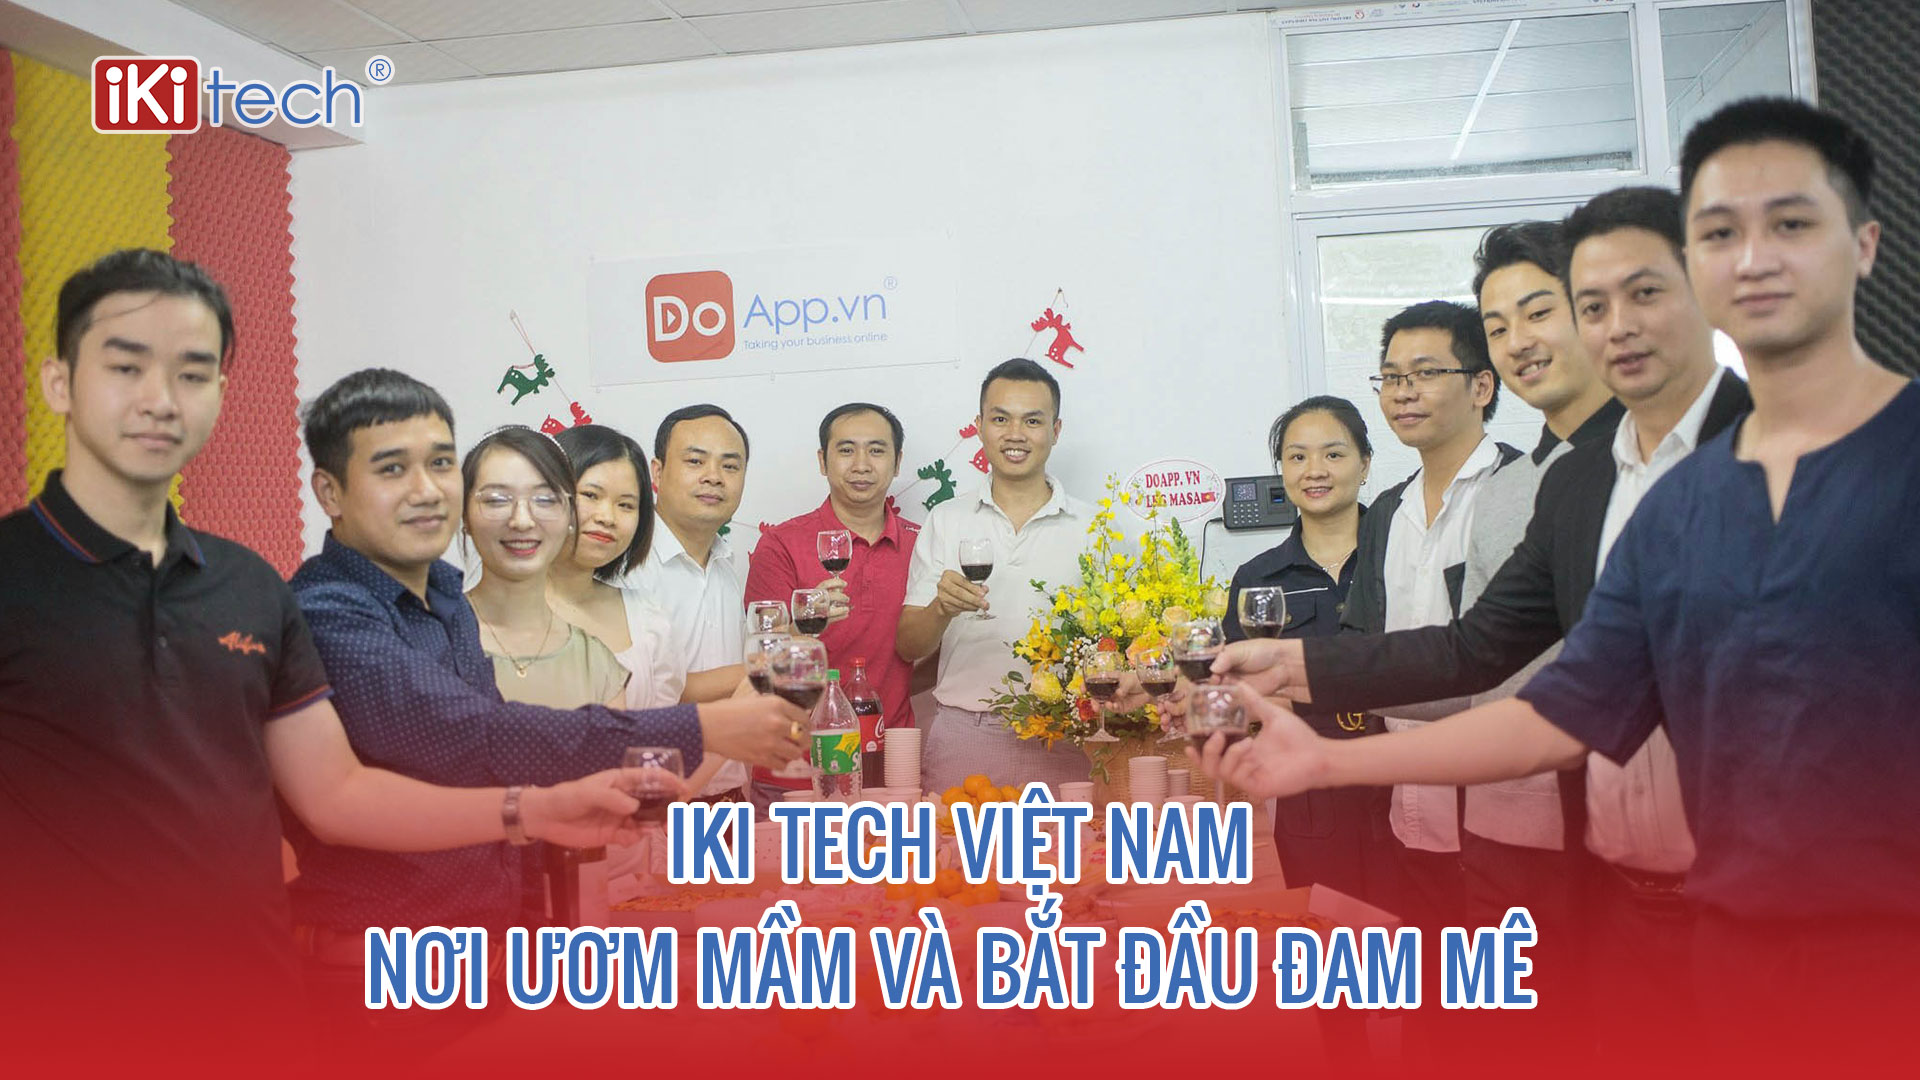 IKI TECH Việt Nam – Nơi ươm mầm và bắt đầu đam mê